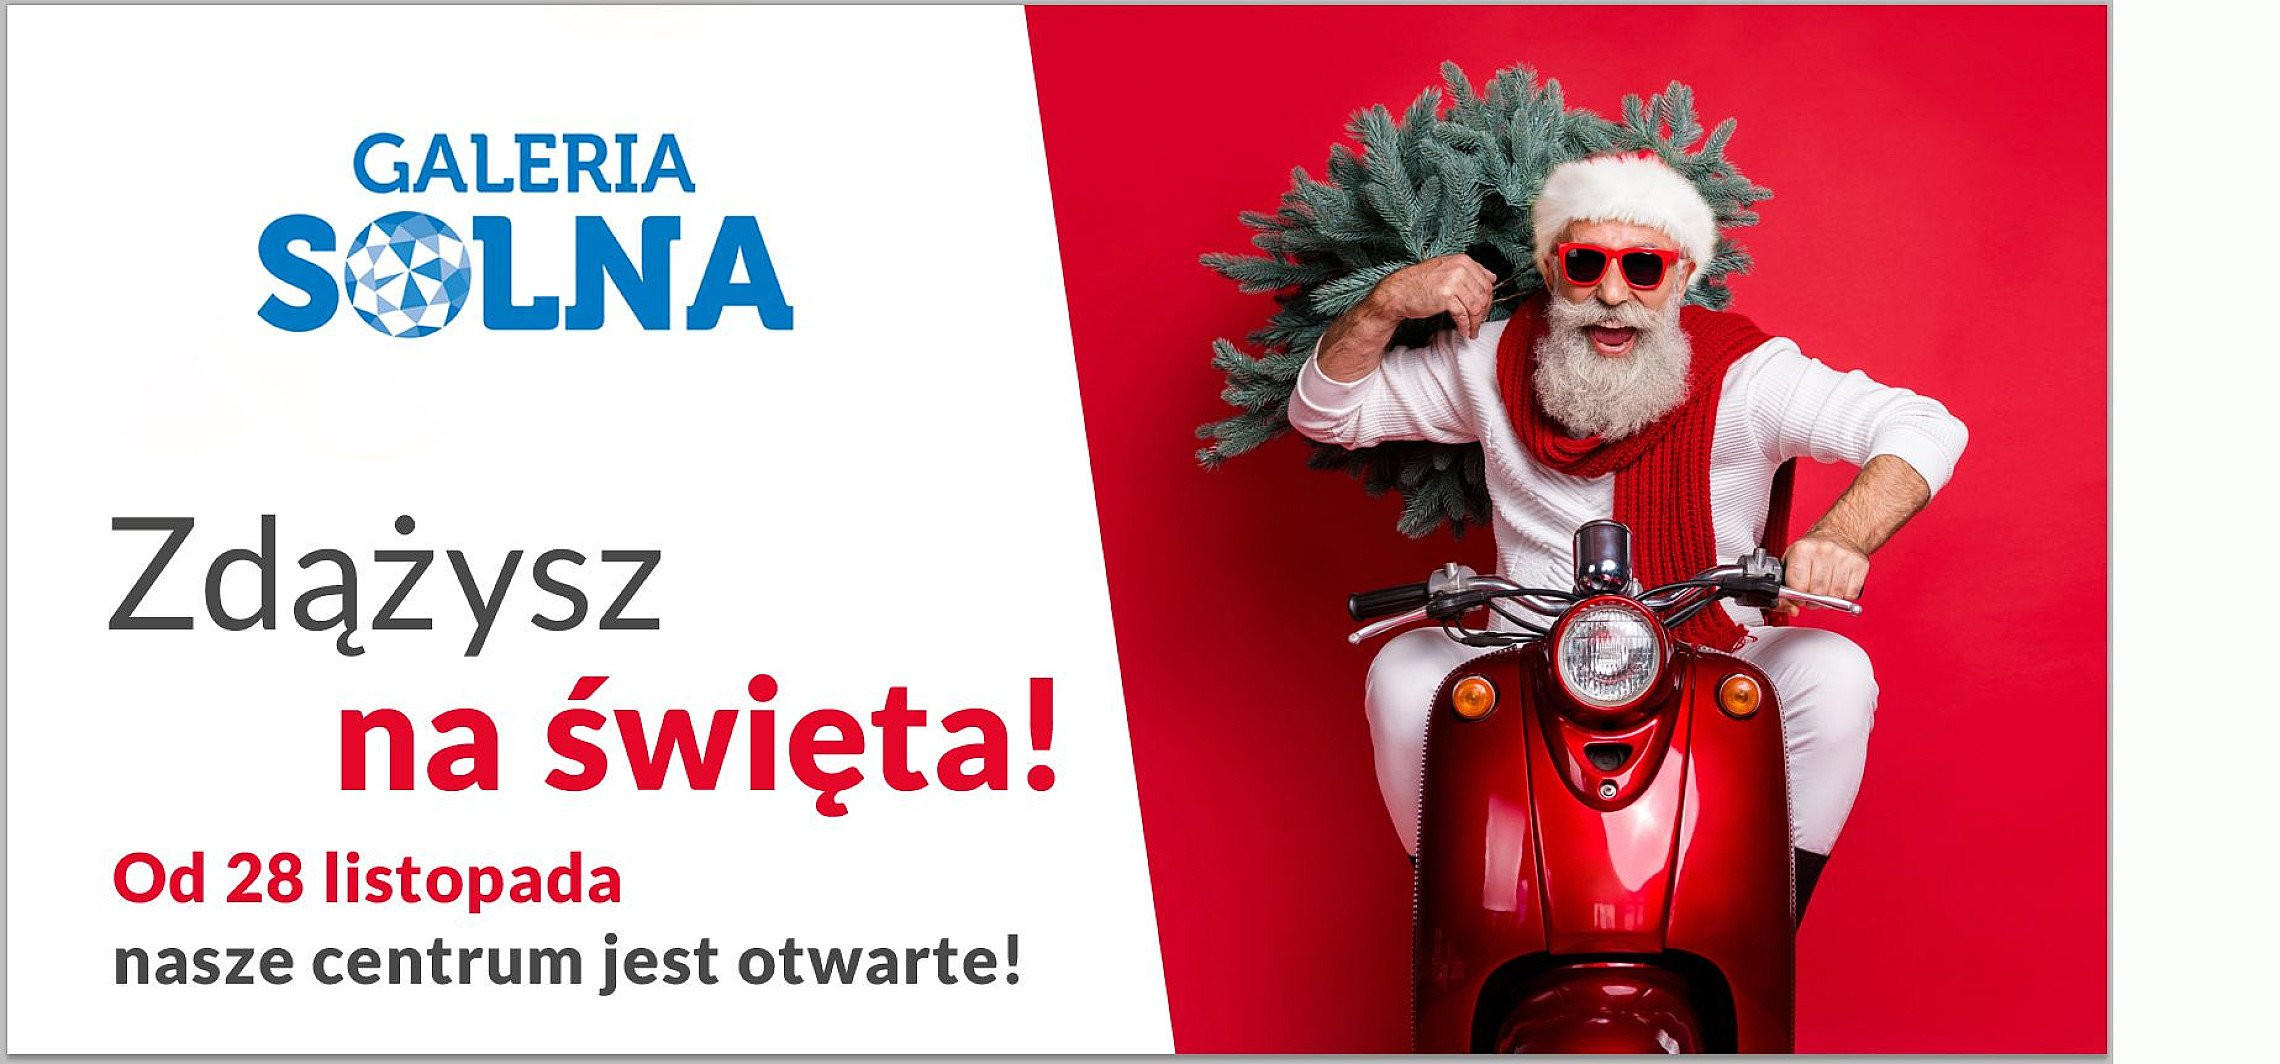 Inowrocław - Galeria Solna w pełni otwarta!